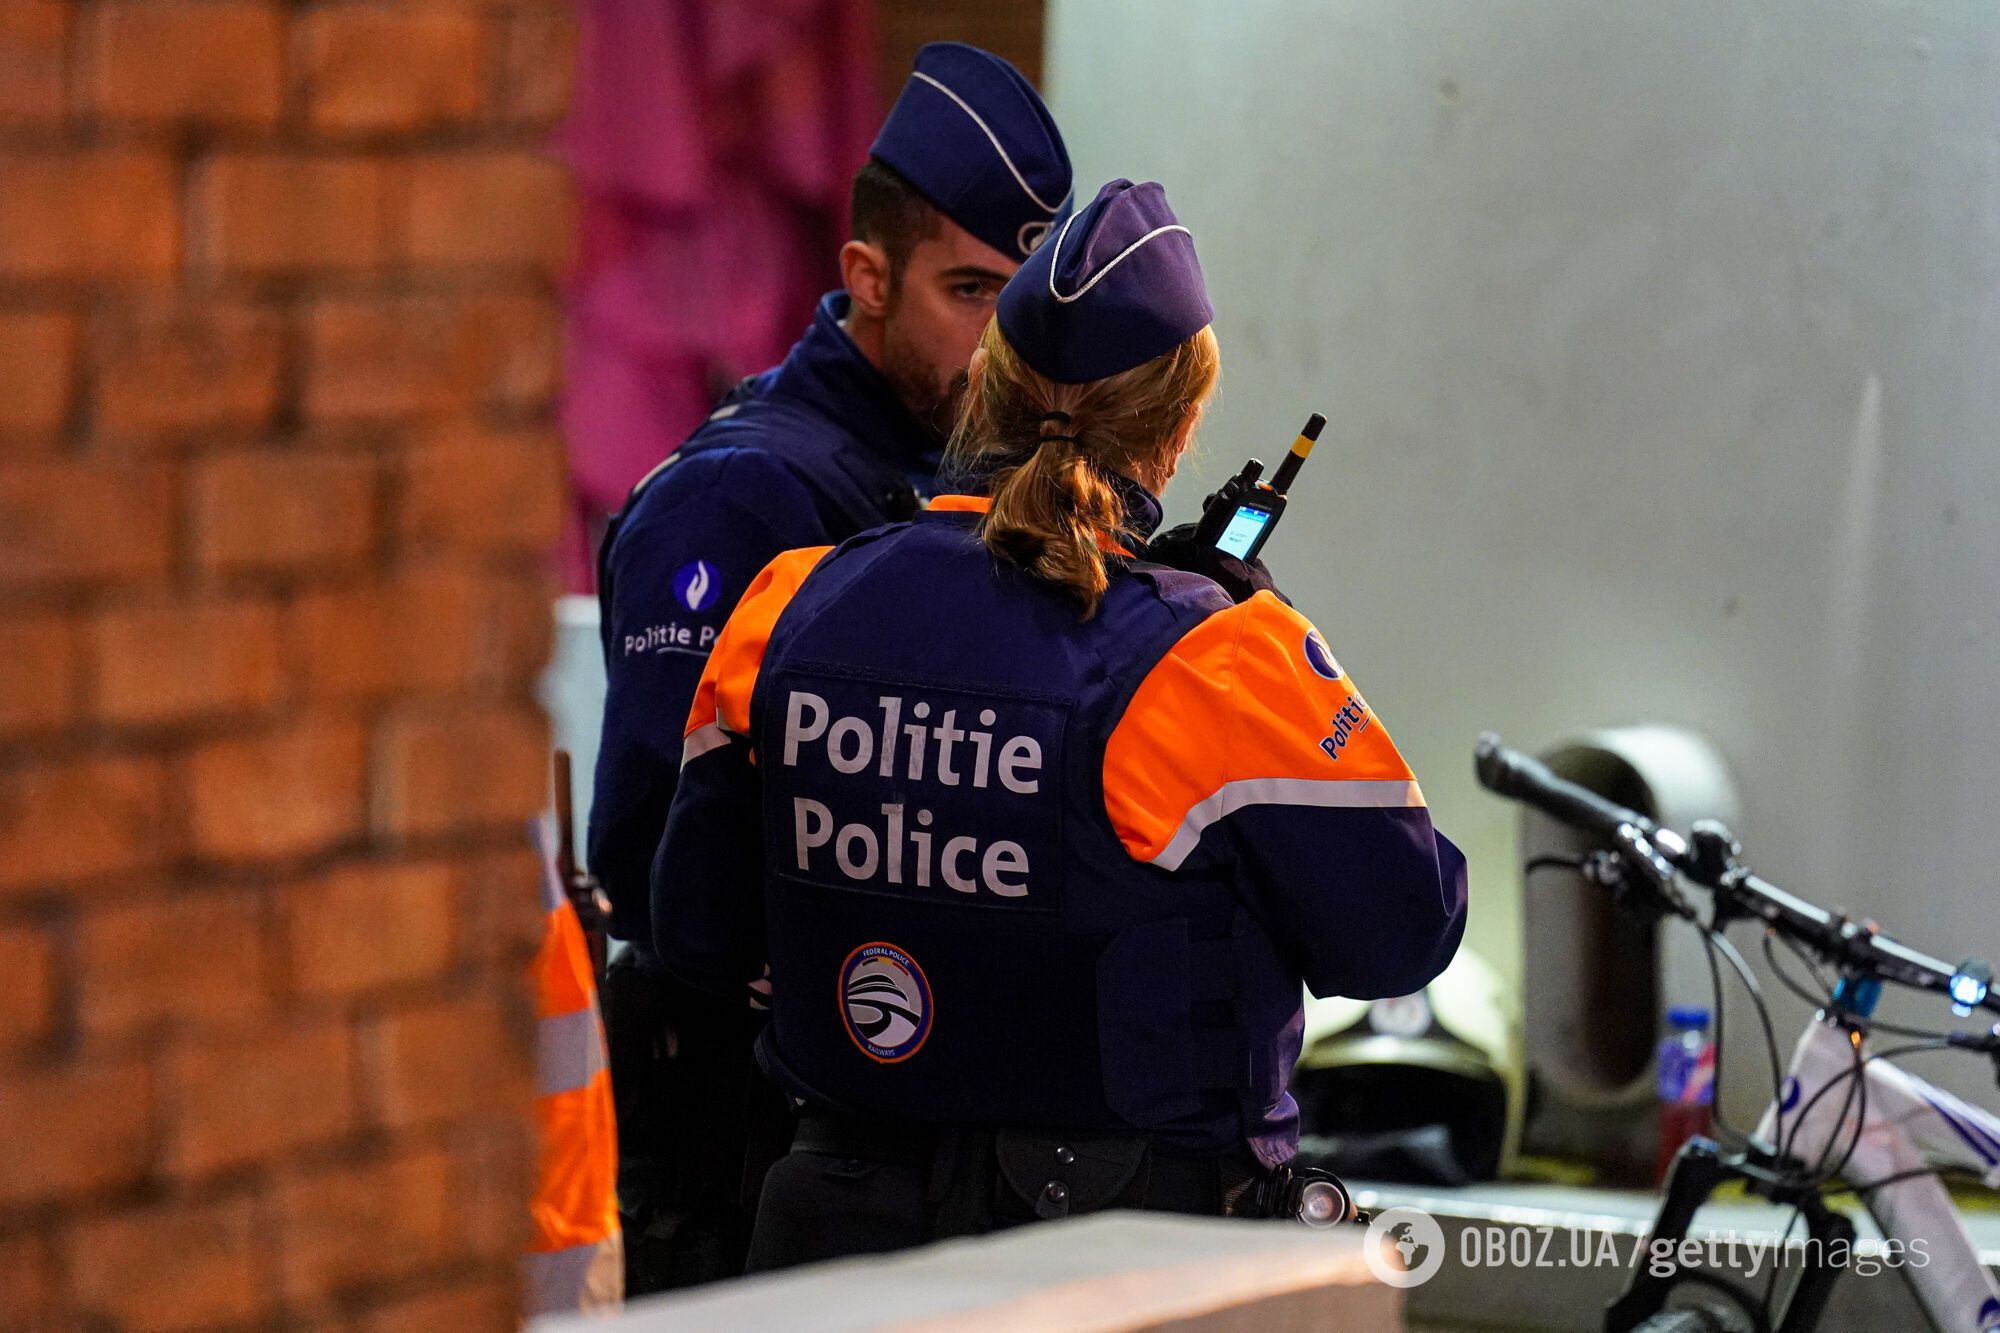 Расстрел шведских болельщиков террористом в Брюсселе: где убийца, как защищали фанатов и кто прервал матч отбора на Евро